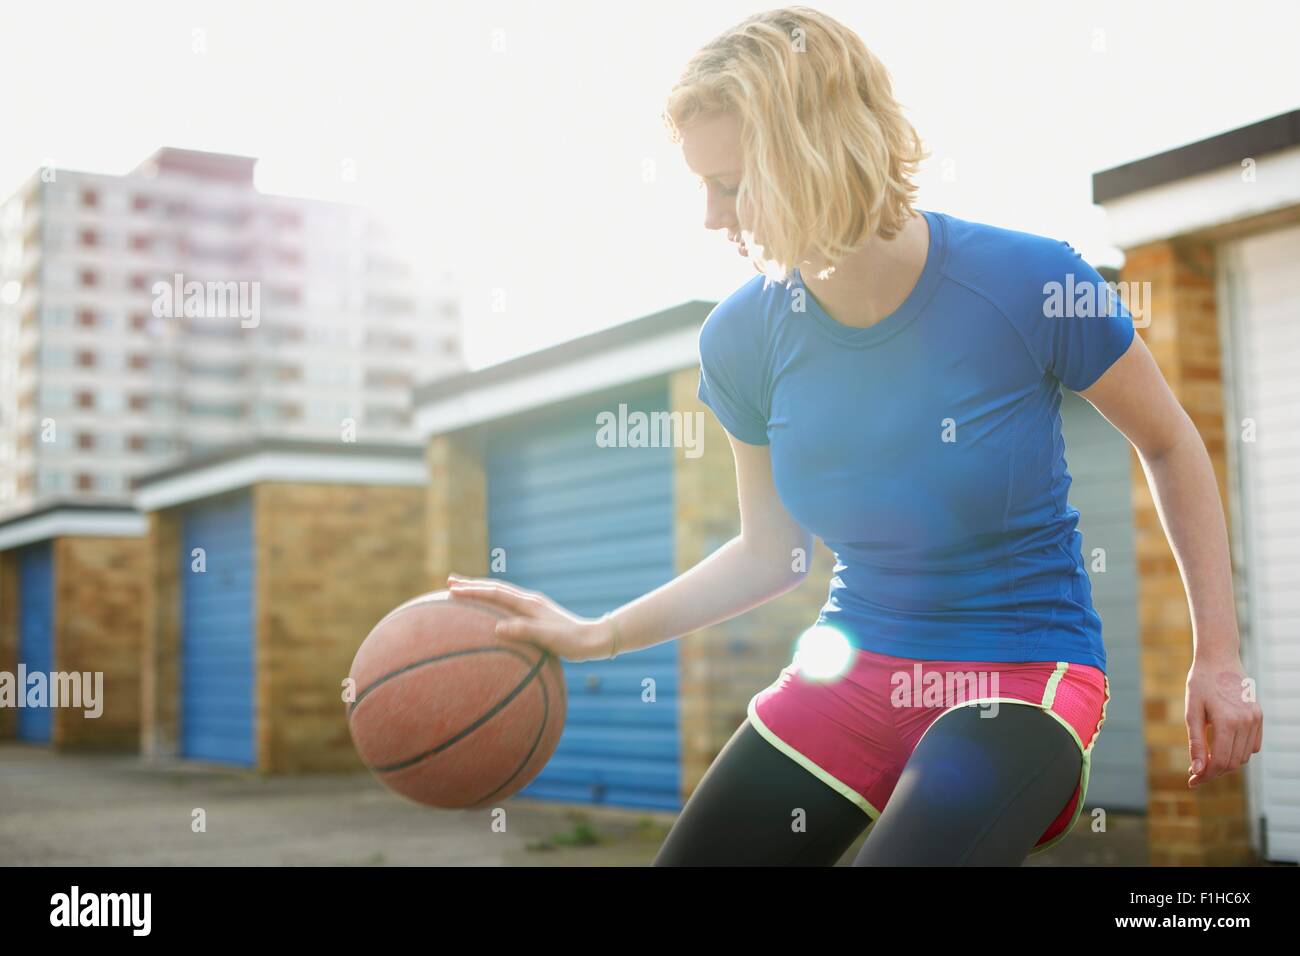 Portrait de femme basket-ball rebondissant Banque D'Images